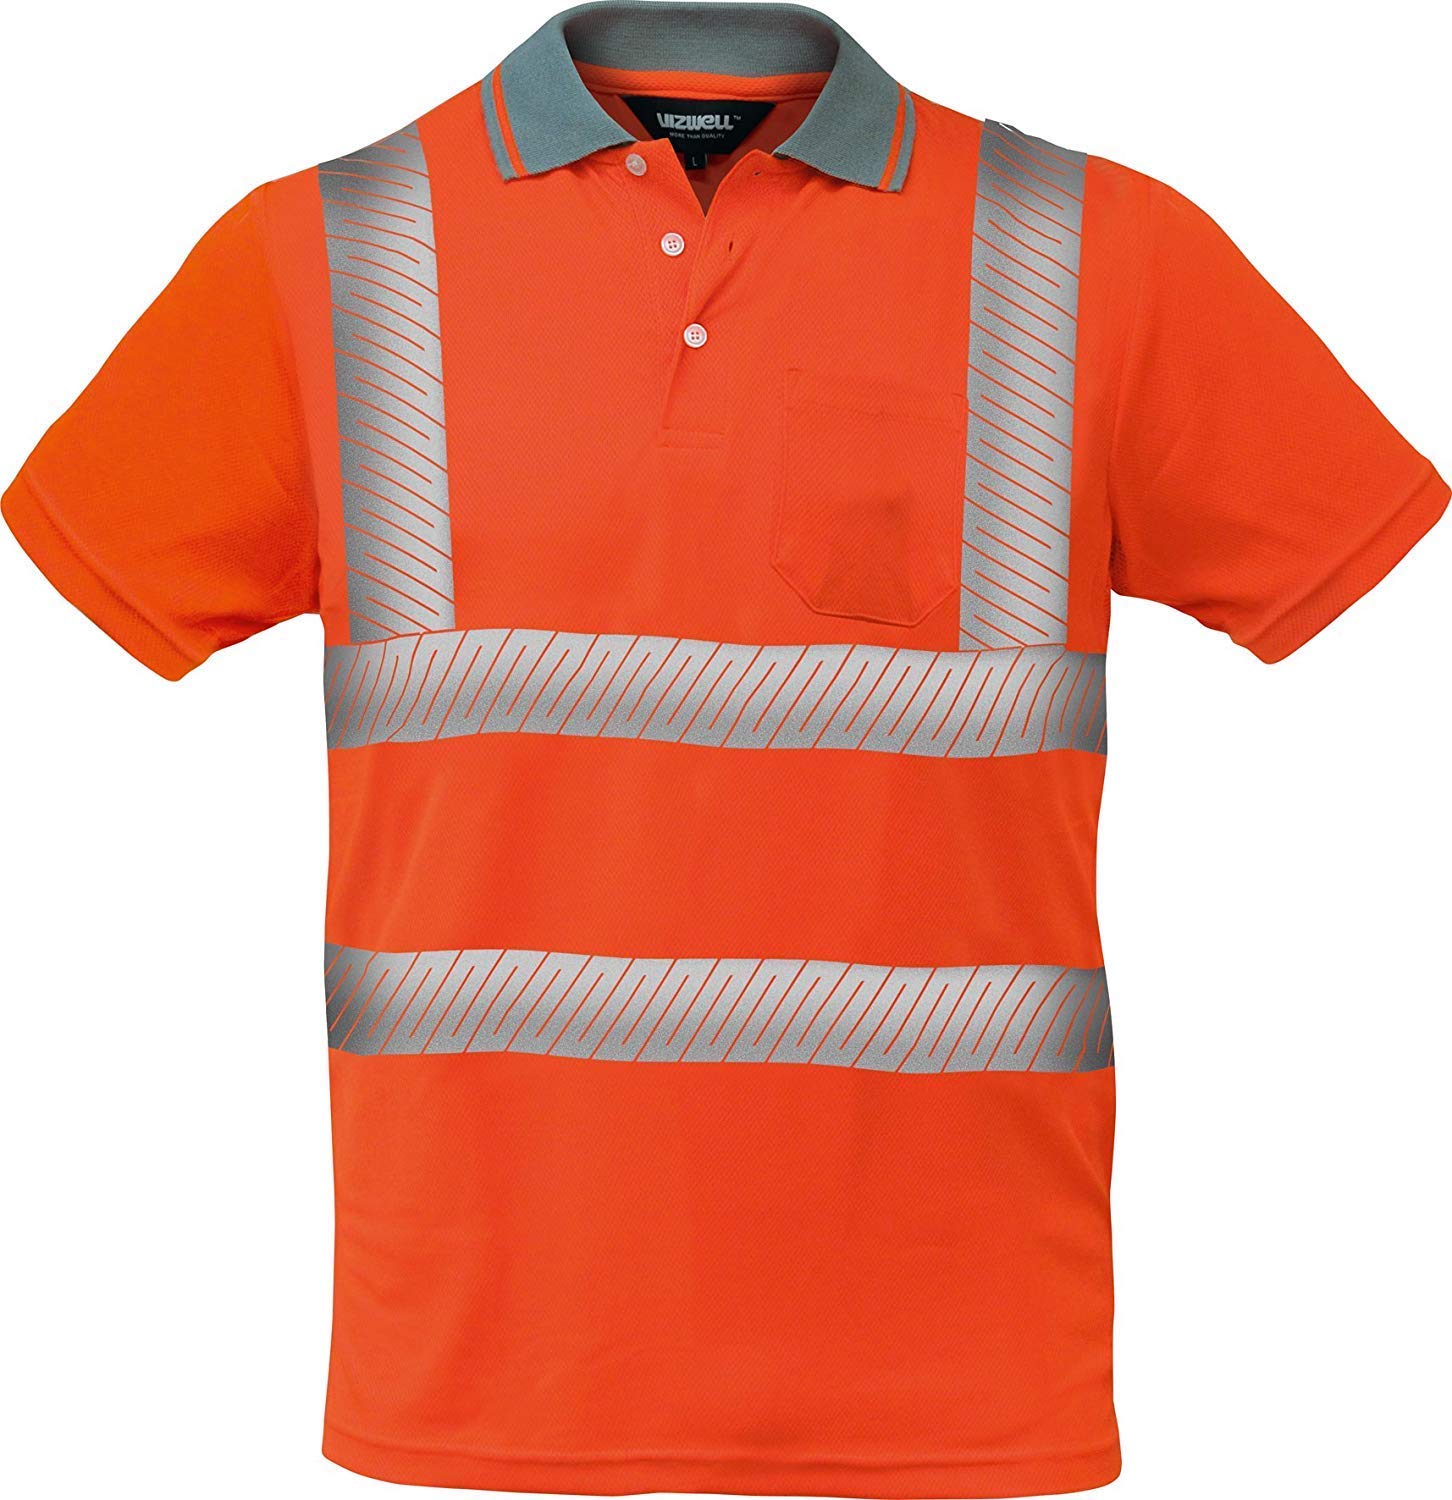 Warnschutz Polo-Shirt Coolpass mit segmentierten Reflexstreifen,Atmungsaktiv,orange oder gelb Gr.XS - 5XL (XXL, orange)